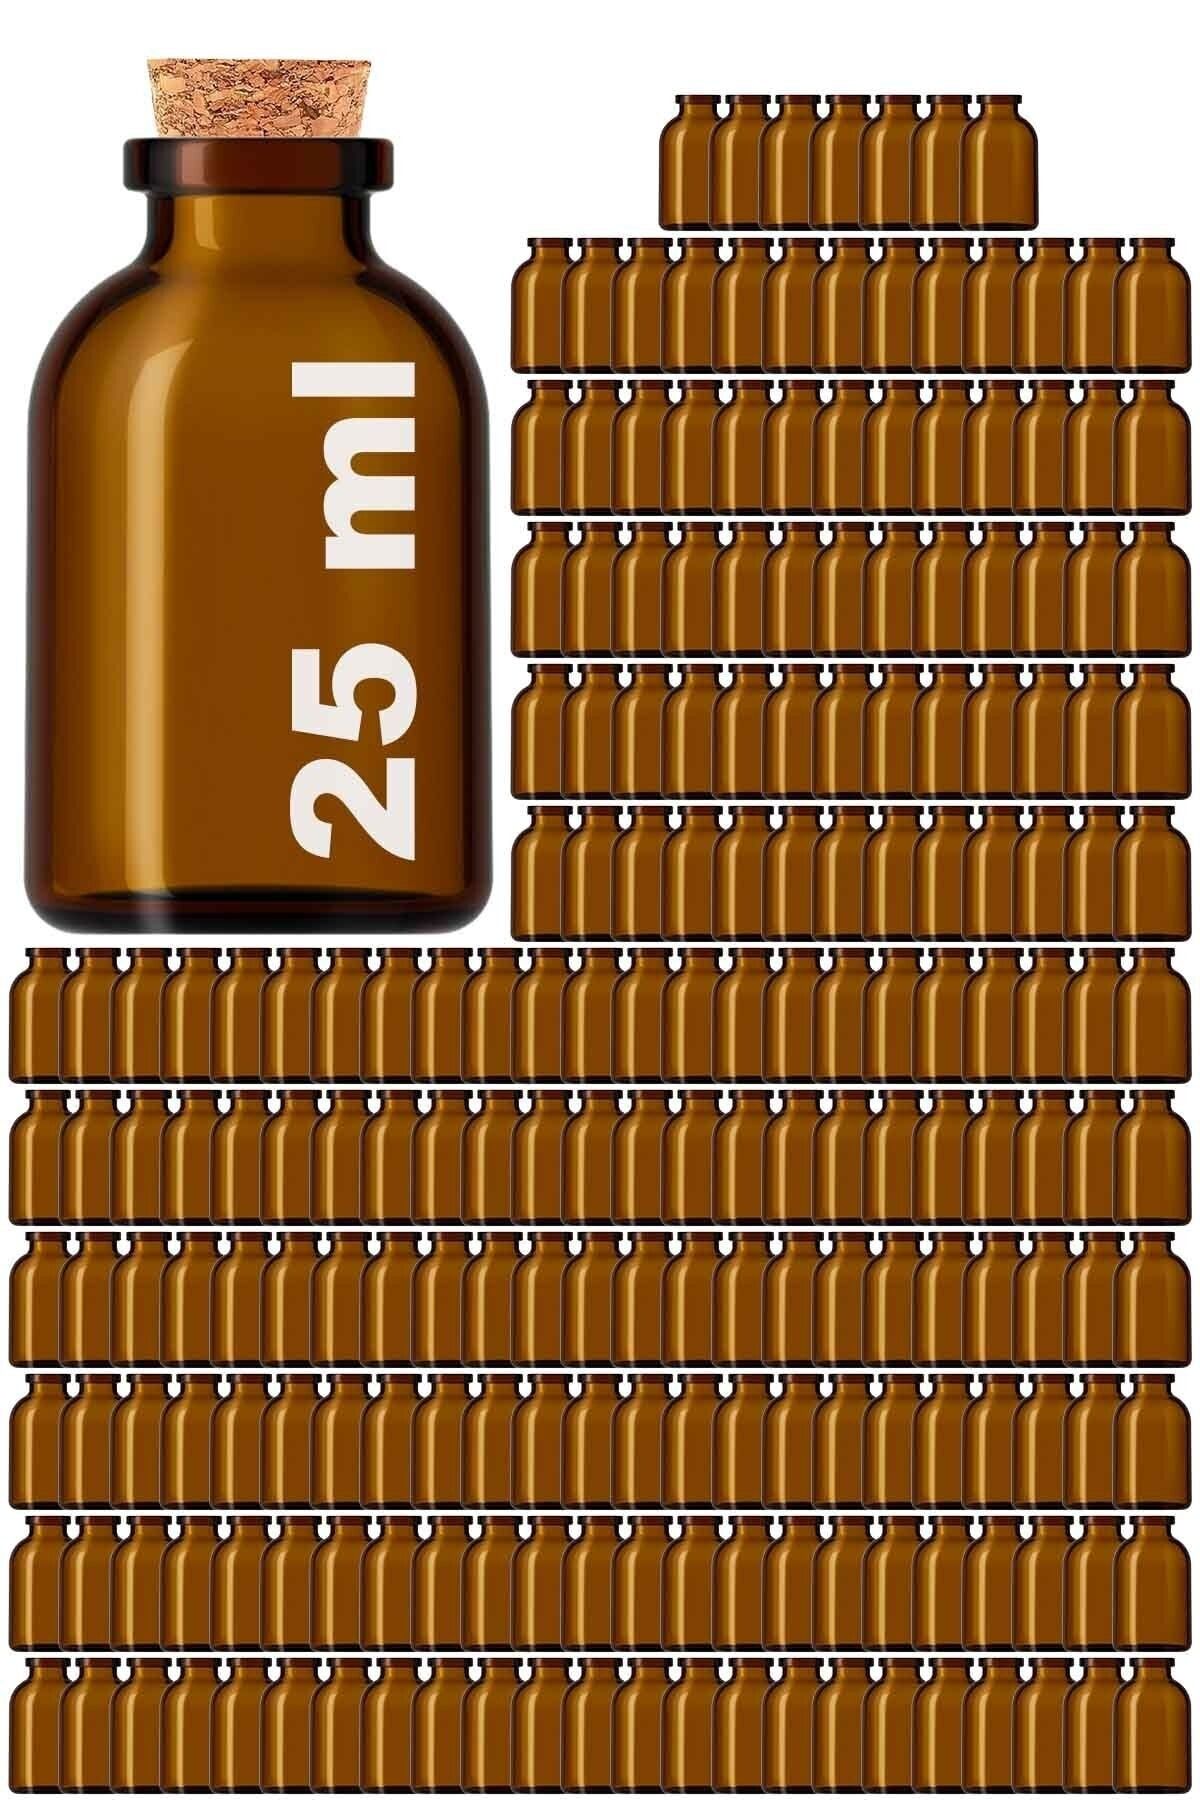 Afra Tedarik 25 ml Amber Kahverengi Şişe Mantar Tıpalı 25 cc Cam Şişe 210 Adet